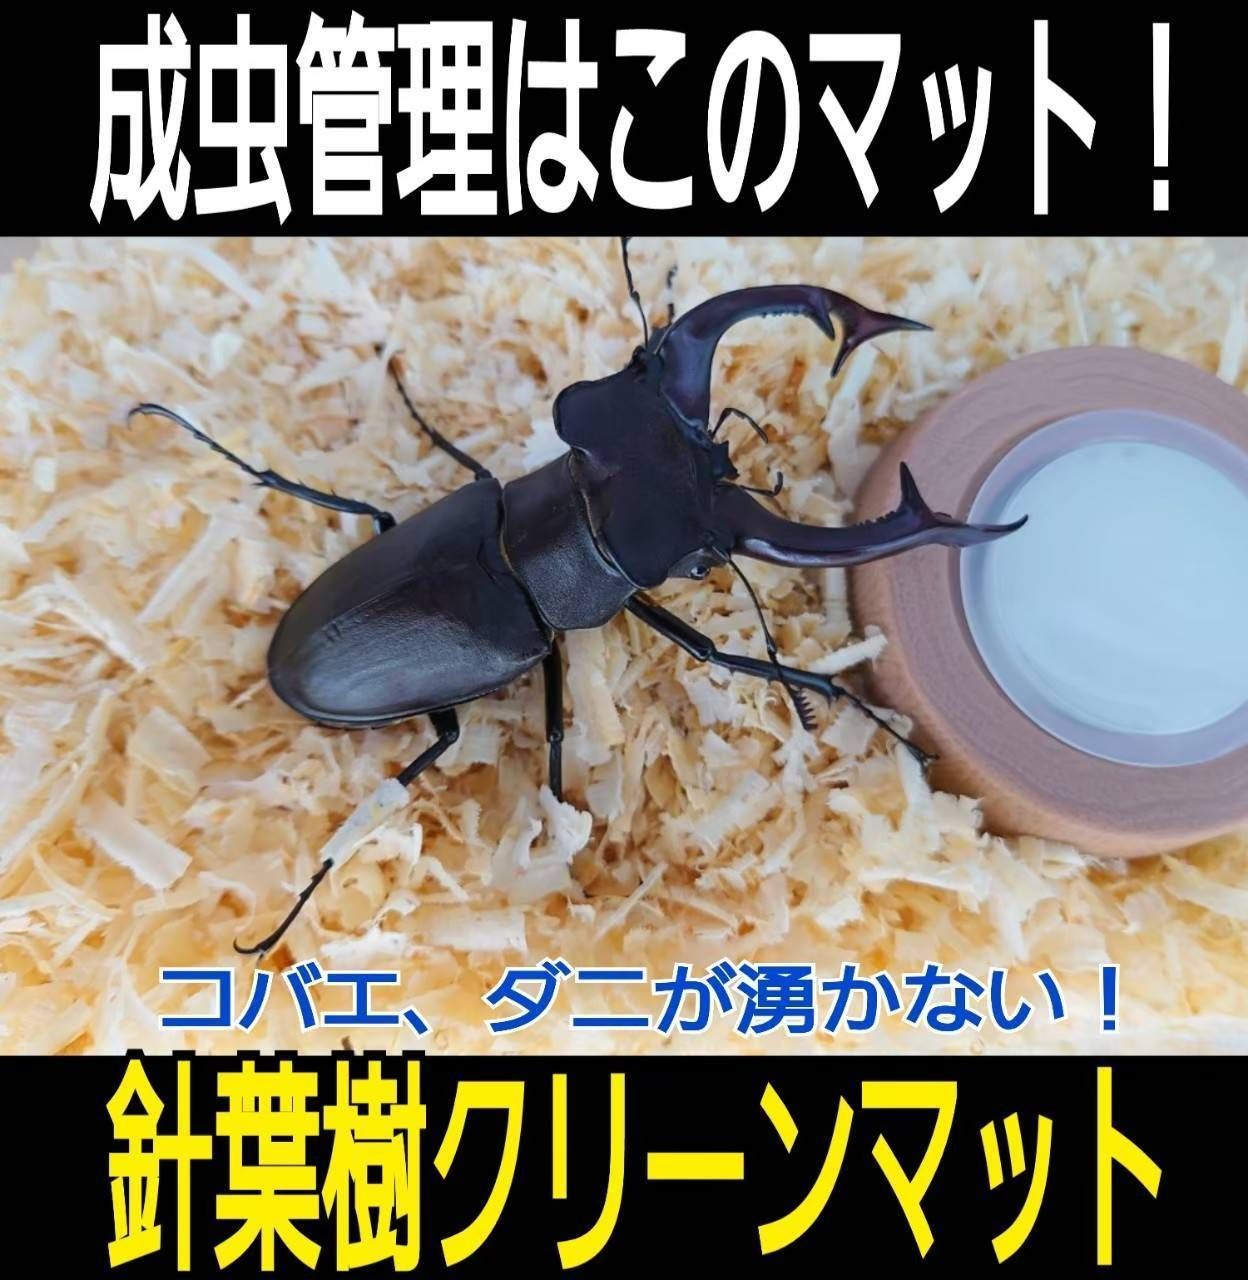 昆虫ゼリー 12クワガタ・カブトムシ・ハムスター・モモンガ・ハリネズミ・小動物b - 2